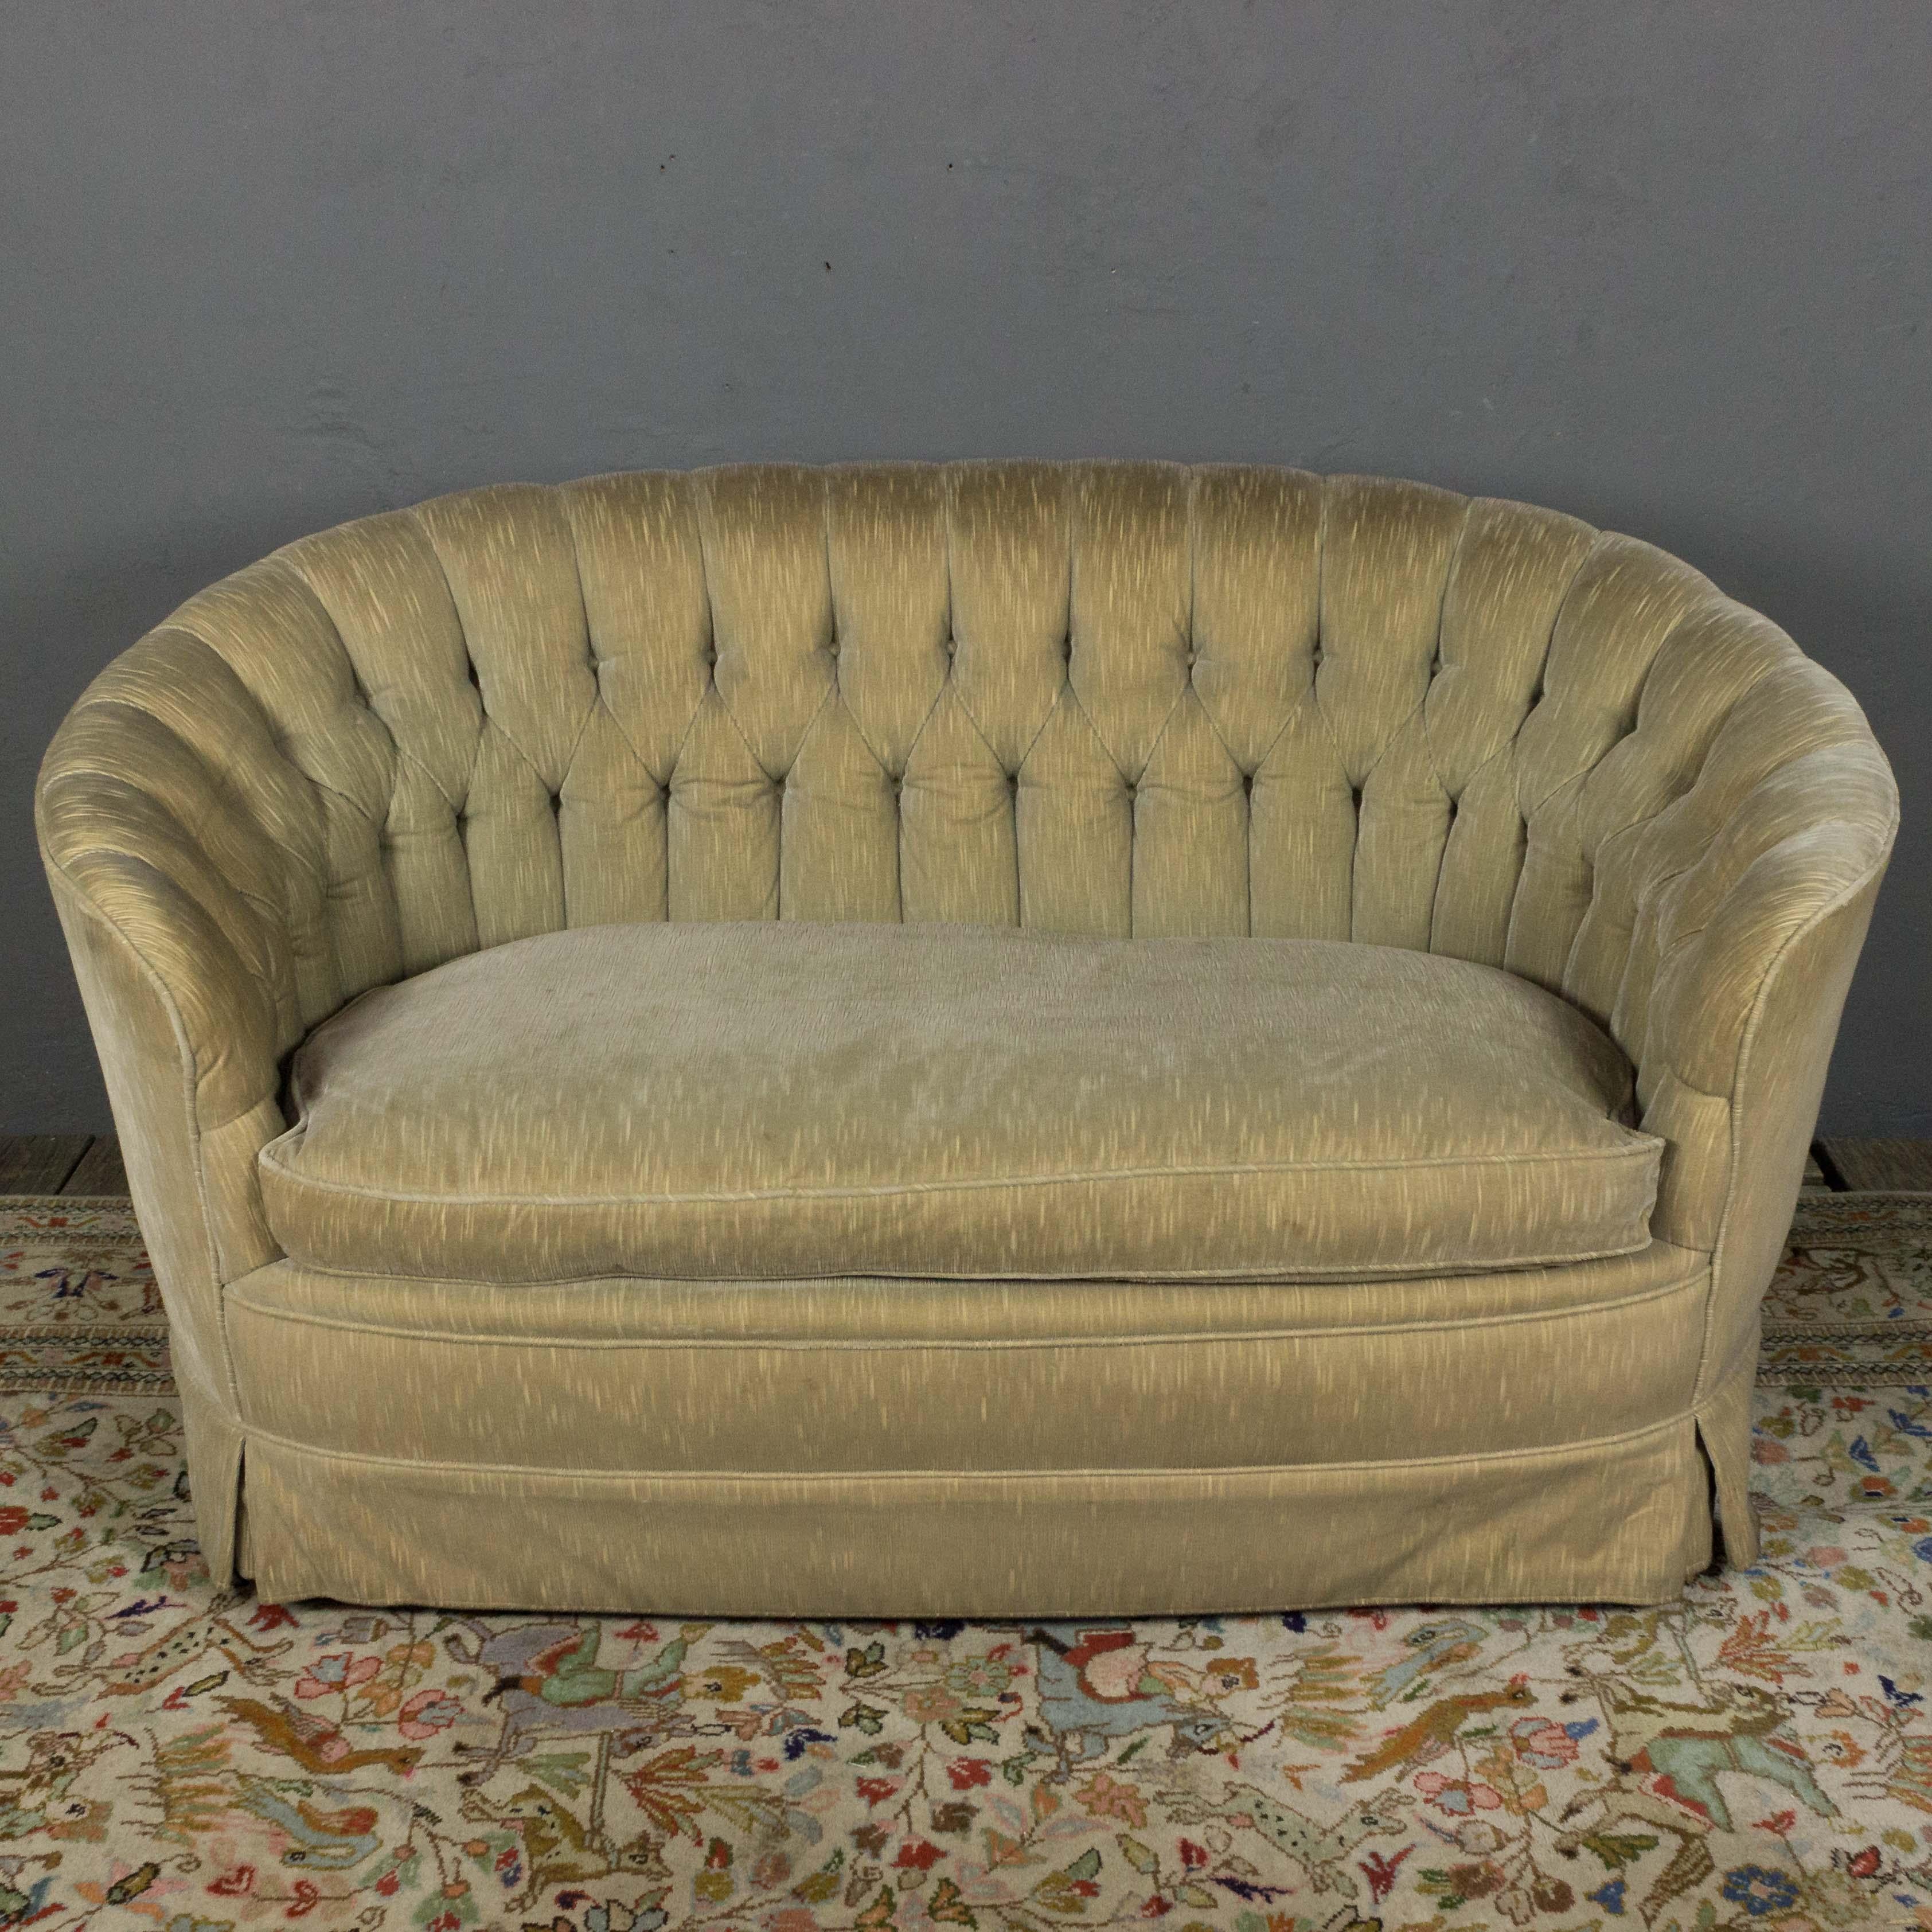 Bequemes Sofa mit getufteter Rückenlehne und einem einzigen großen Sitzkissen, original gepolstert. Amerikanisches Fabrikat, um 1960. Guter alter Zustand. Die Arme müssen gestrafft werden, wenn dieses Stück neu gepolstert wird.

 Ref #: